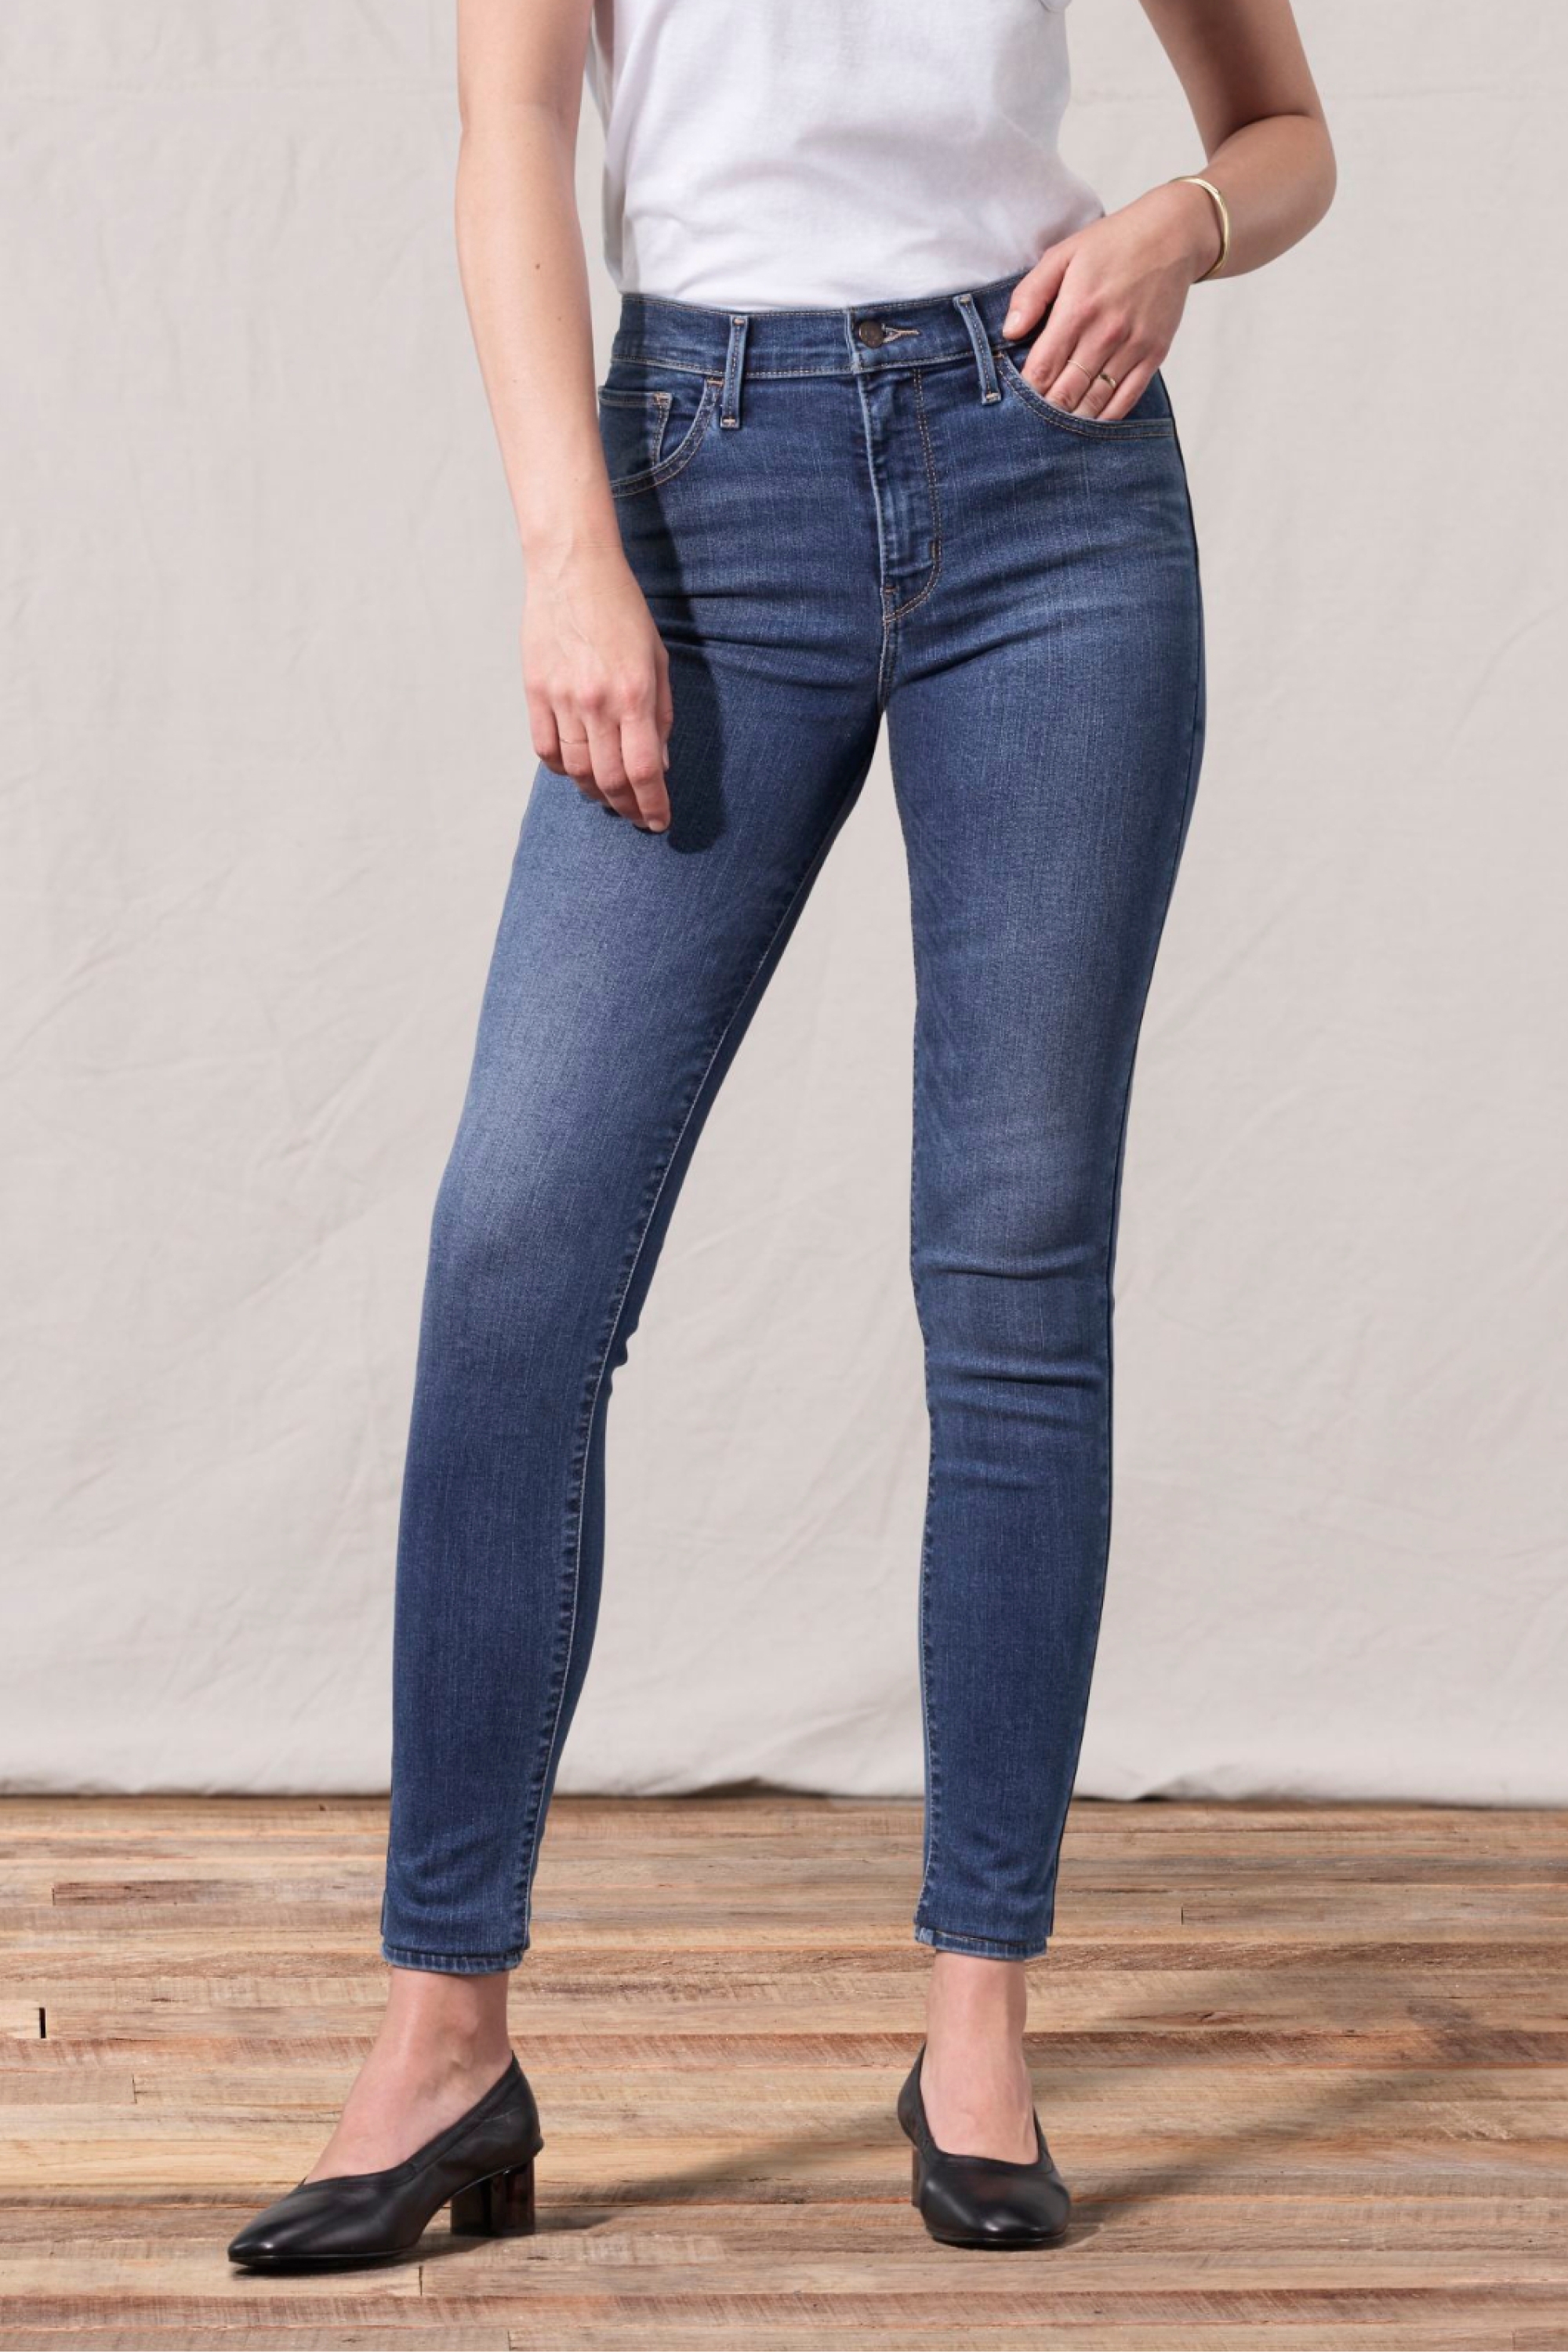 levis ladies jeans price